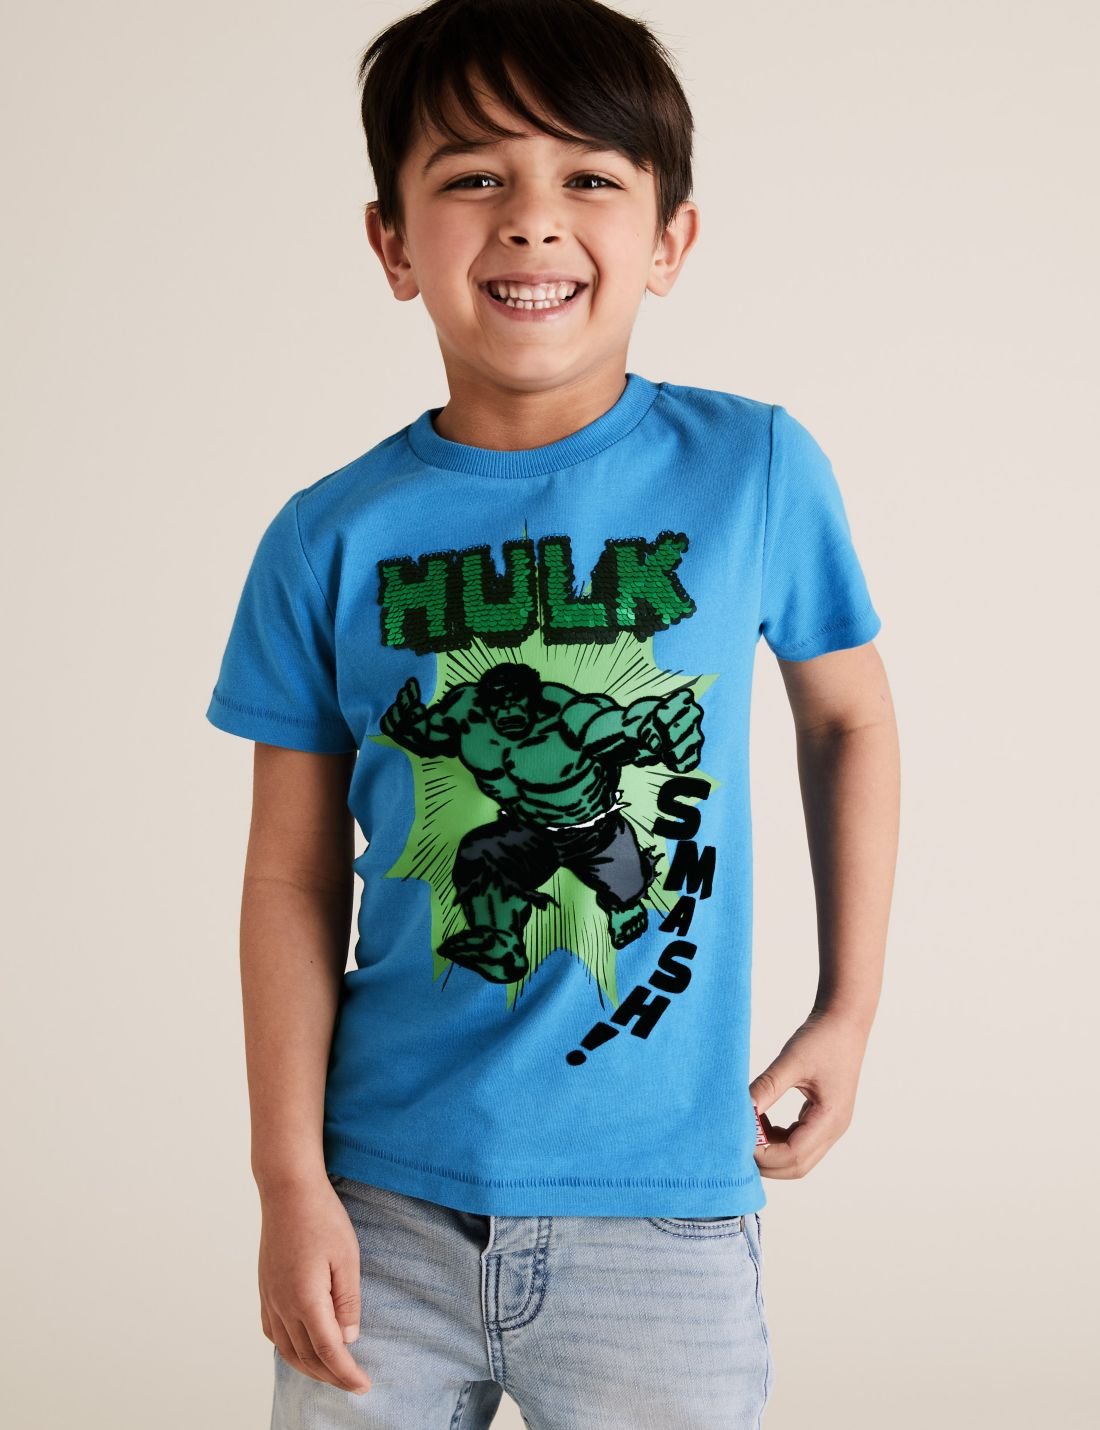 De§iŸen Pullu Hulk? T-Shirt